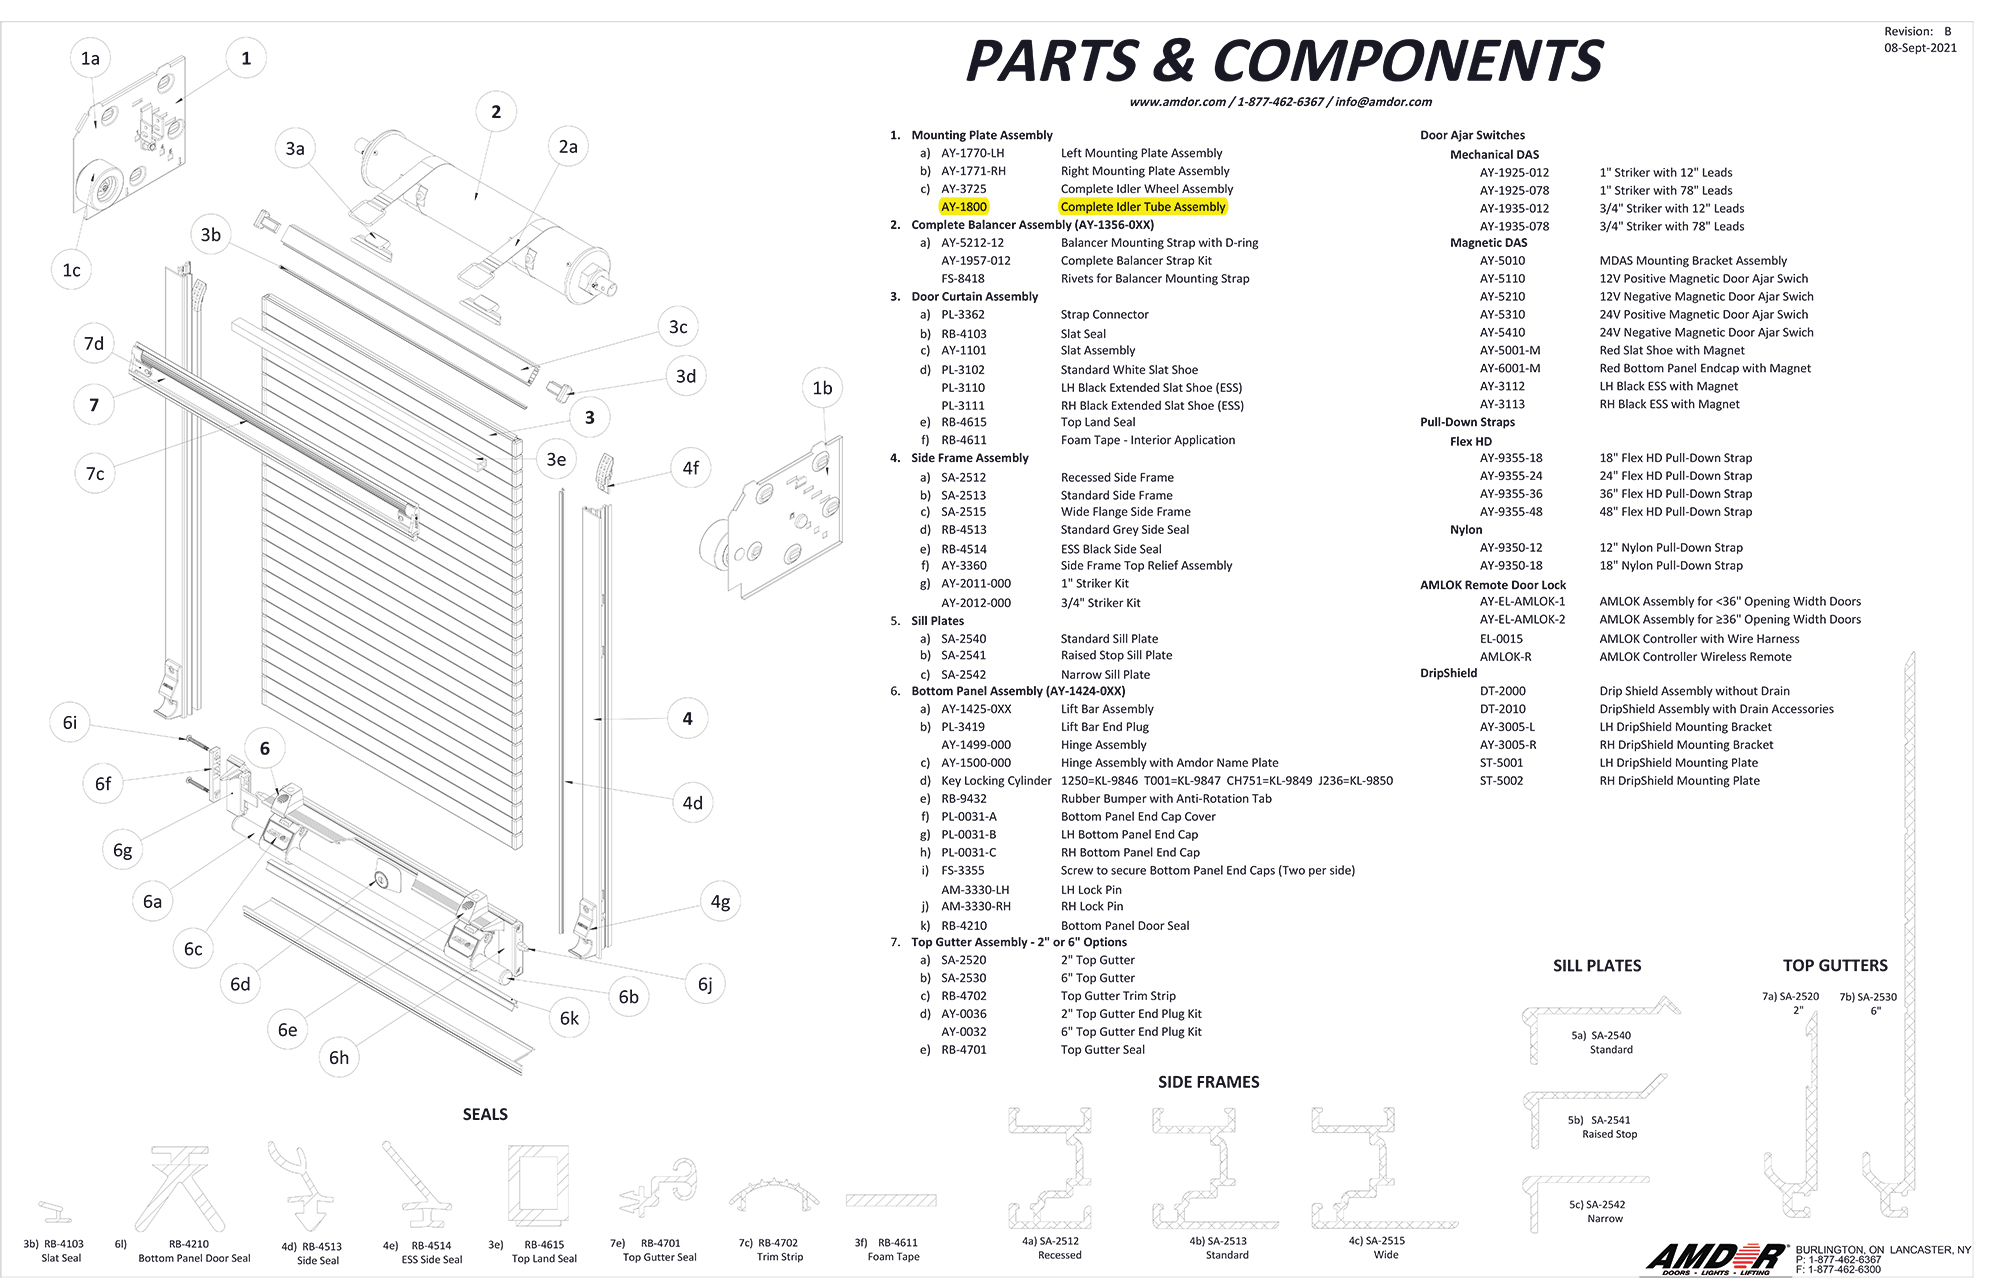 Parts & Components - AMDOR